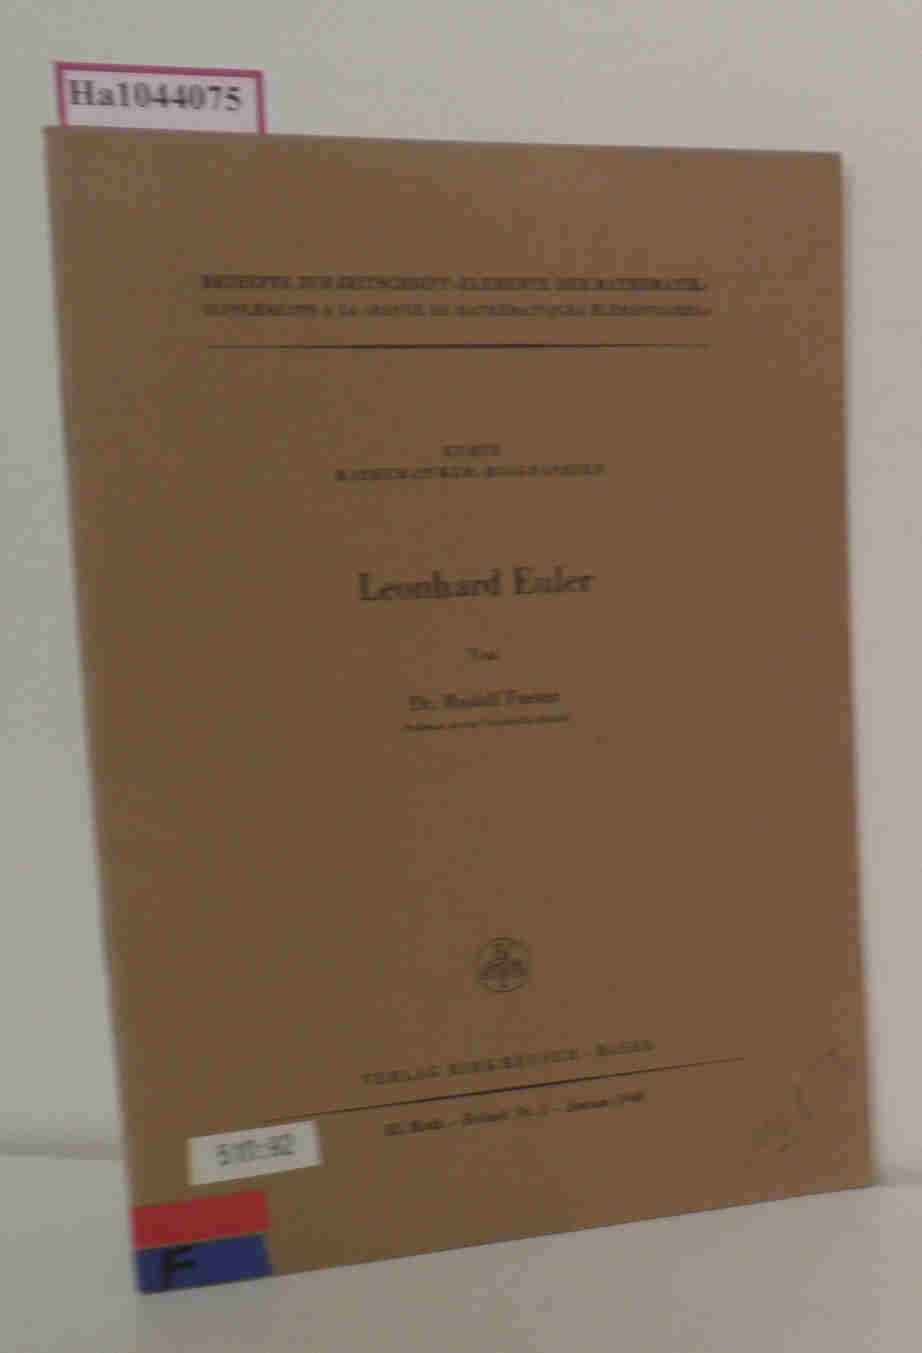 Leonhard Euler. Kurze Mathematiker-Biographien. (=Beihefte zur Zeitschrift 'Elemente der Mathematik' Beiheft Nr. 3 - Januar 1948). - Fueter, Rudolf